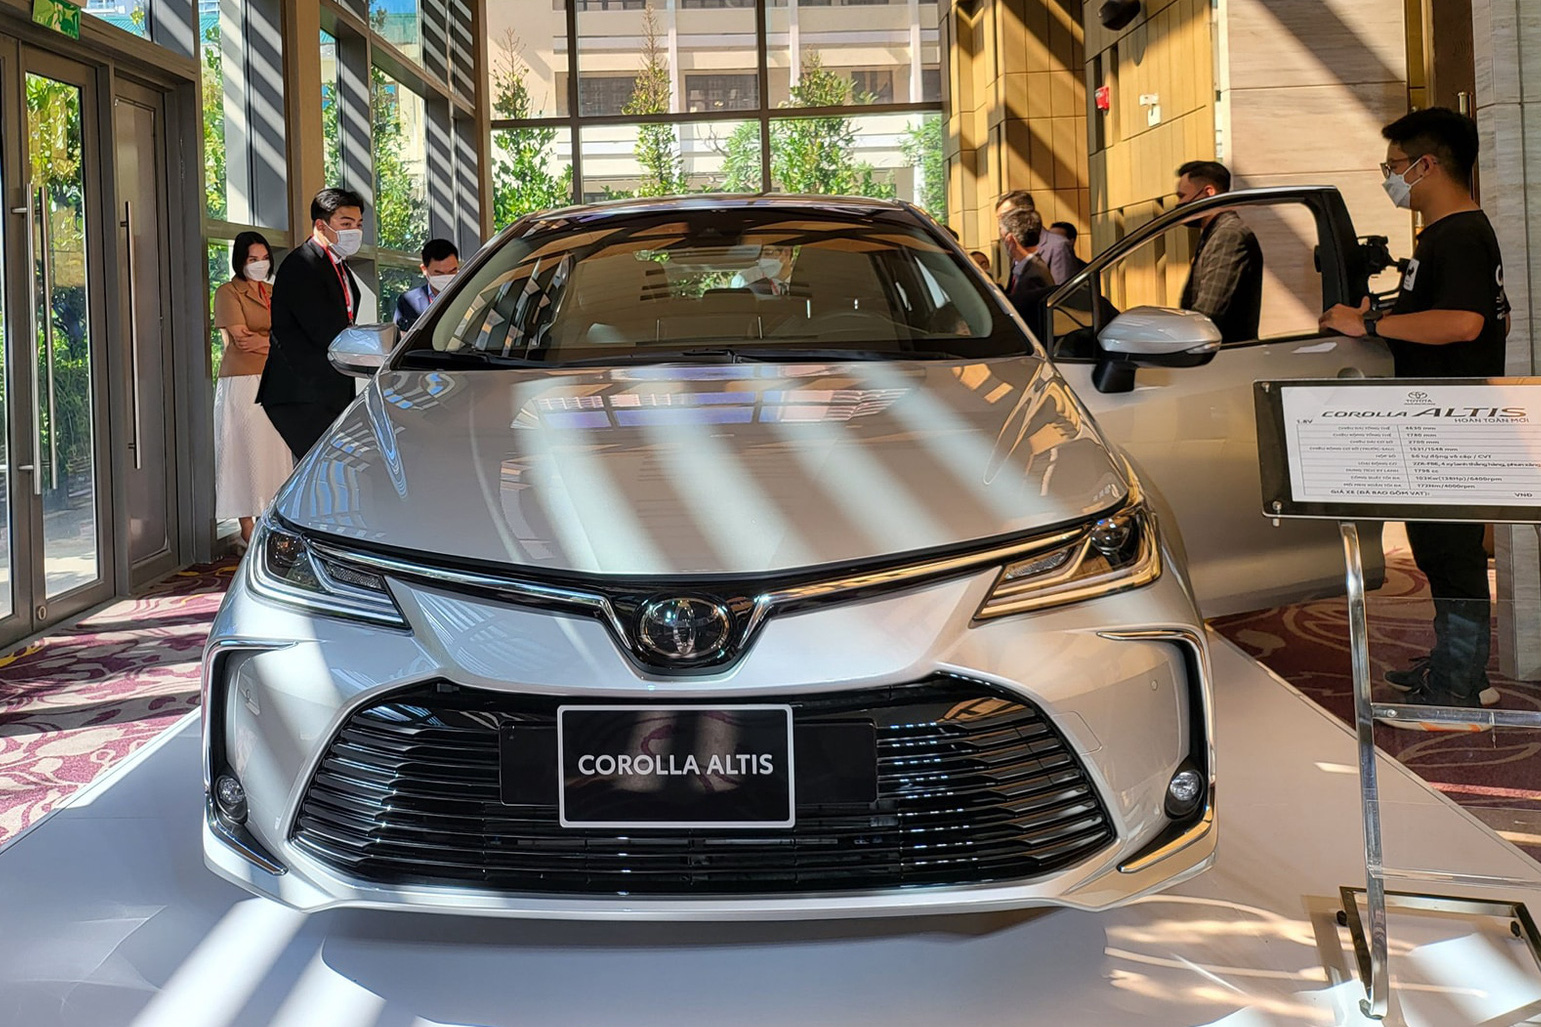 Hình ảnh rò rỉ cho thấy trang bị khủng lần đầu có trên Toyota Corolla Altis 2022 sắp bán tại Việt Nam, tranh ngôi vua công nghệ với Mazda3